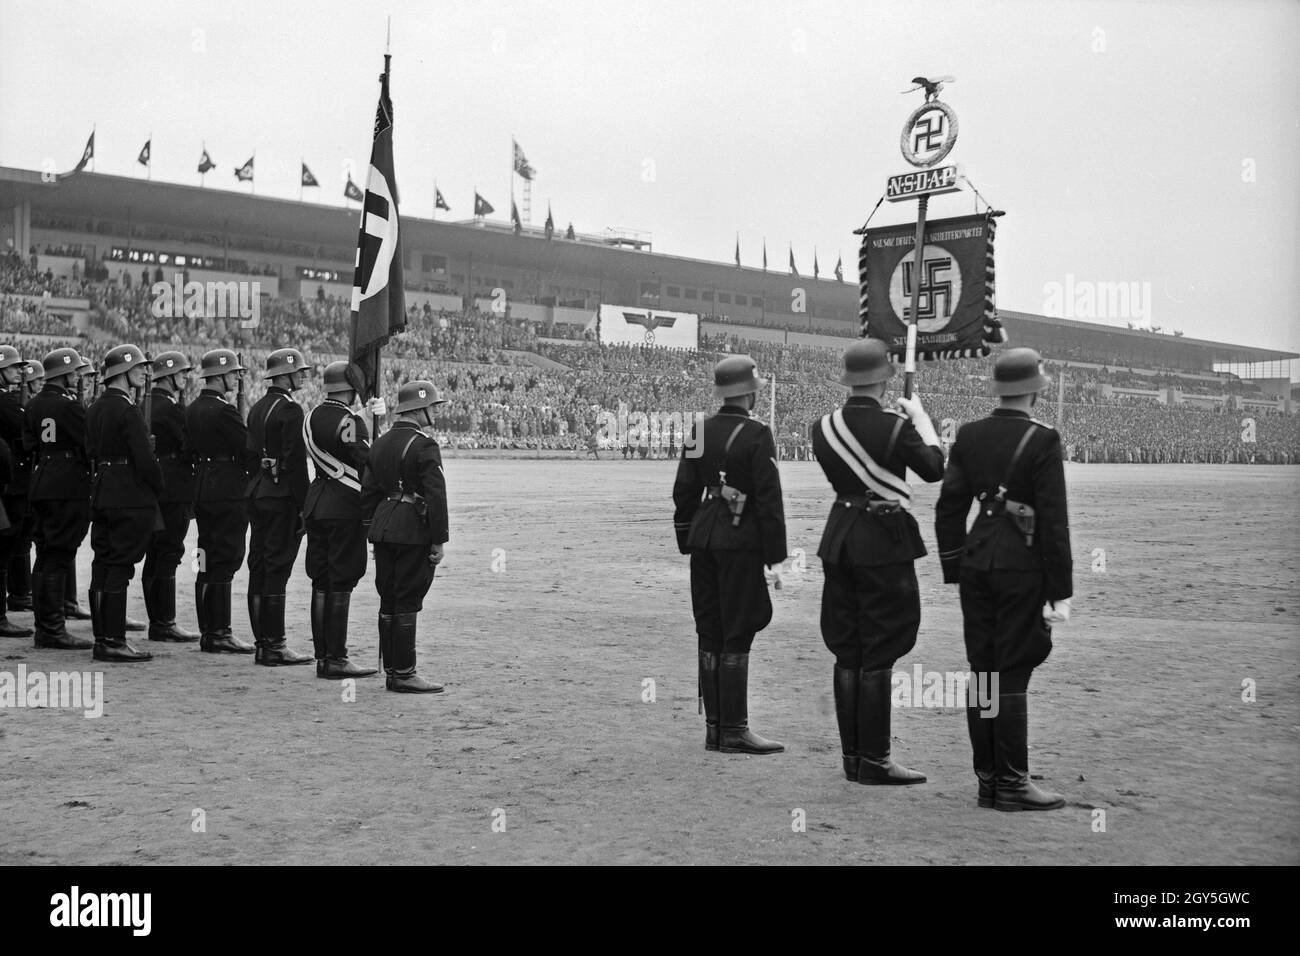 Ehrengarde der SS mit Standarte im Sokol Stadion anlässlich der Geburtstagsfeier für Adolf Hitler, Prag, 1930er Jahre. Stock Photo